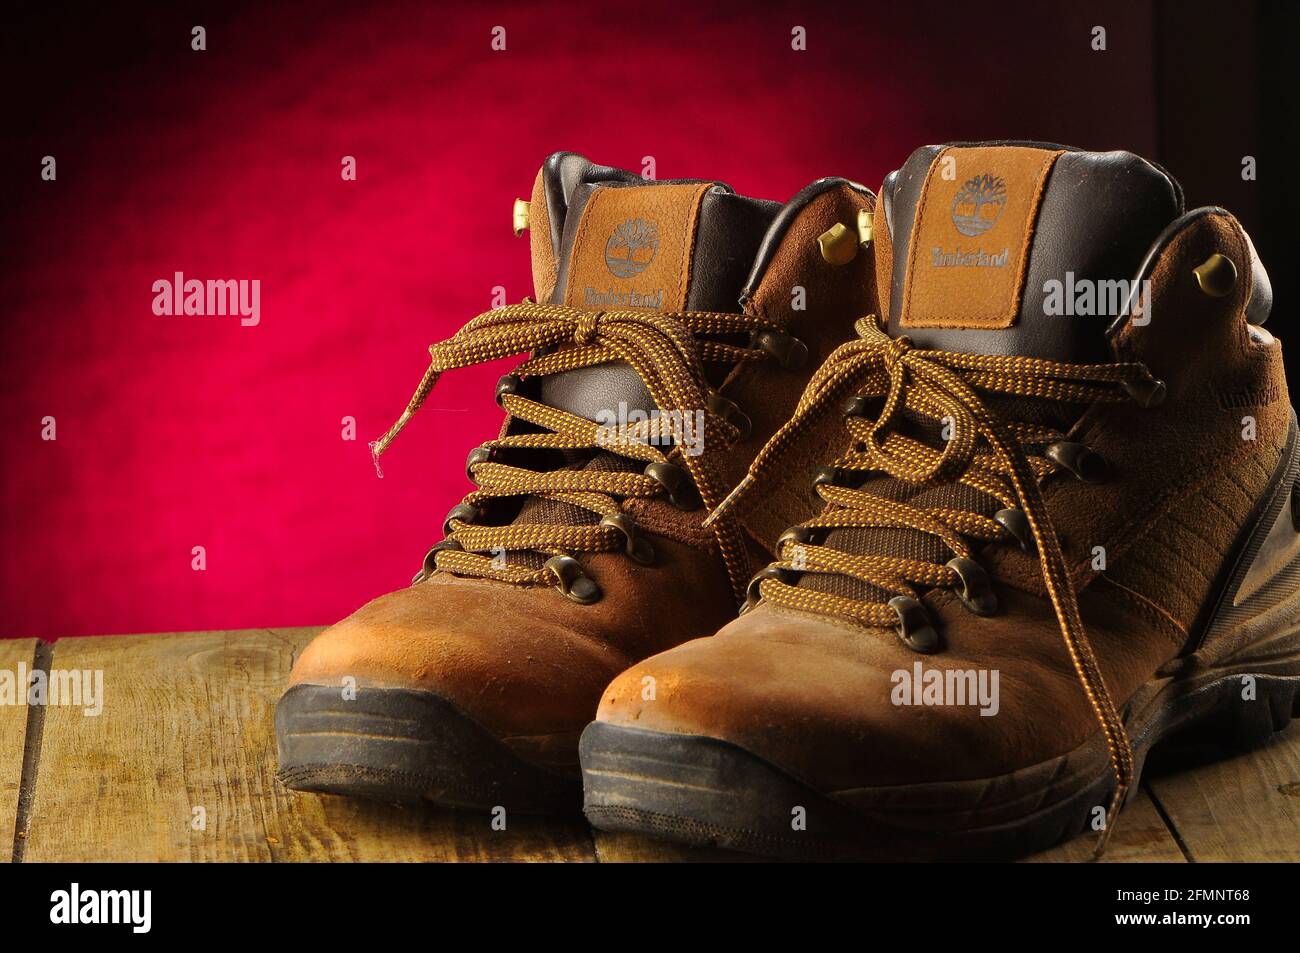 Timberland shoes immagini e fotografie stock ad alta risoluzione - Alamy